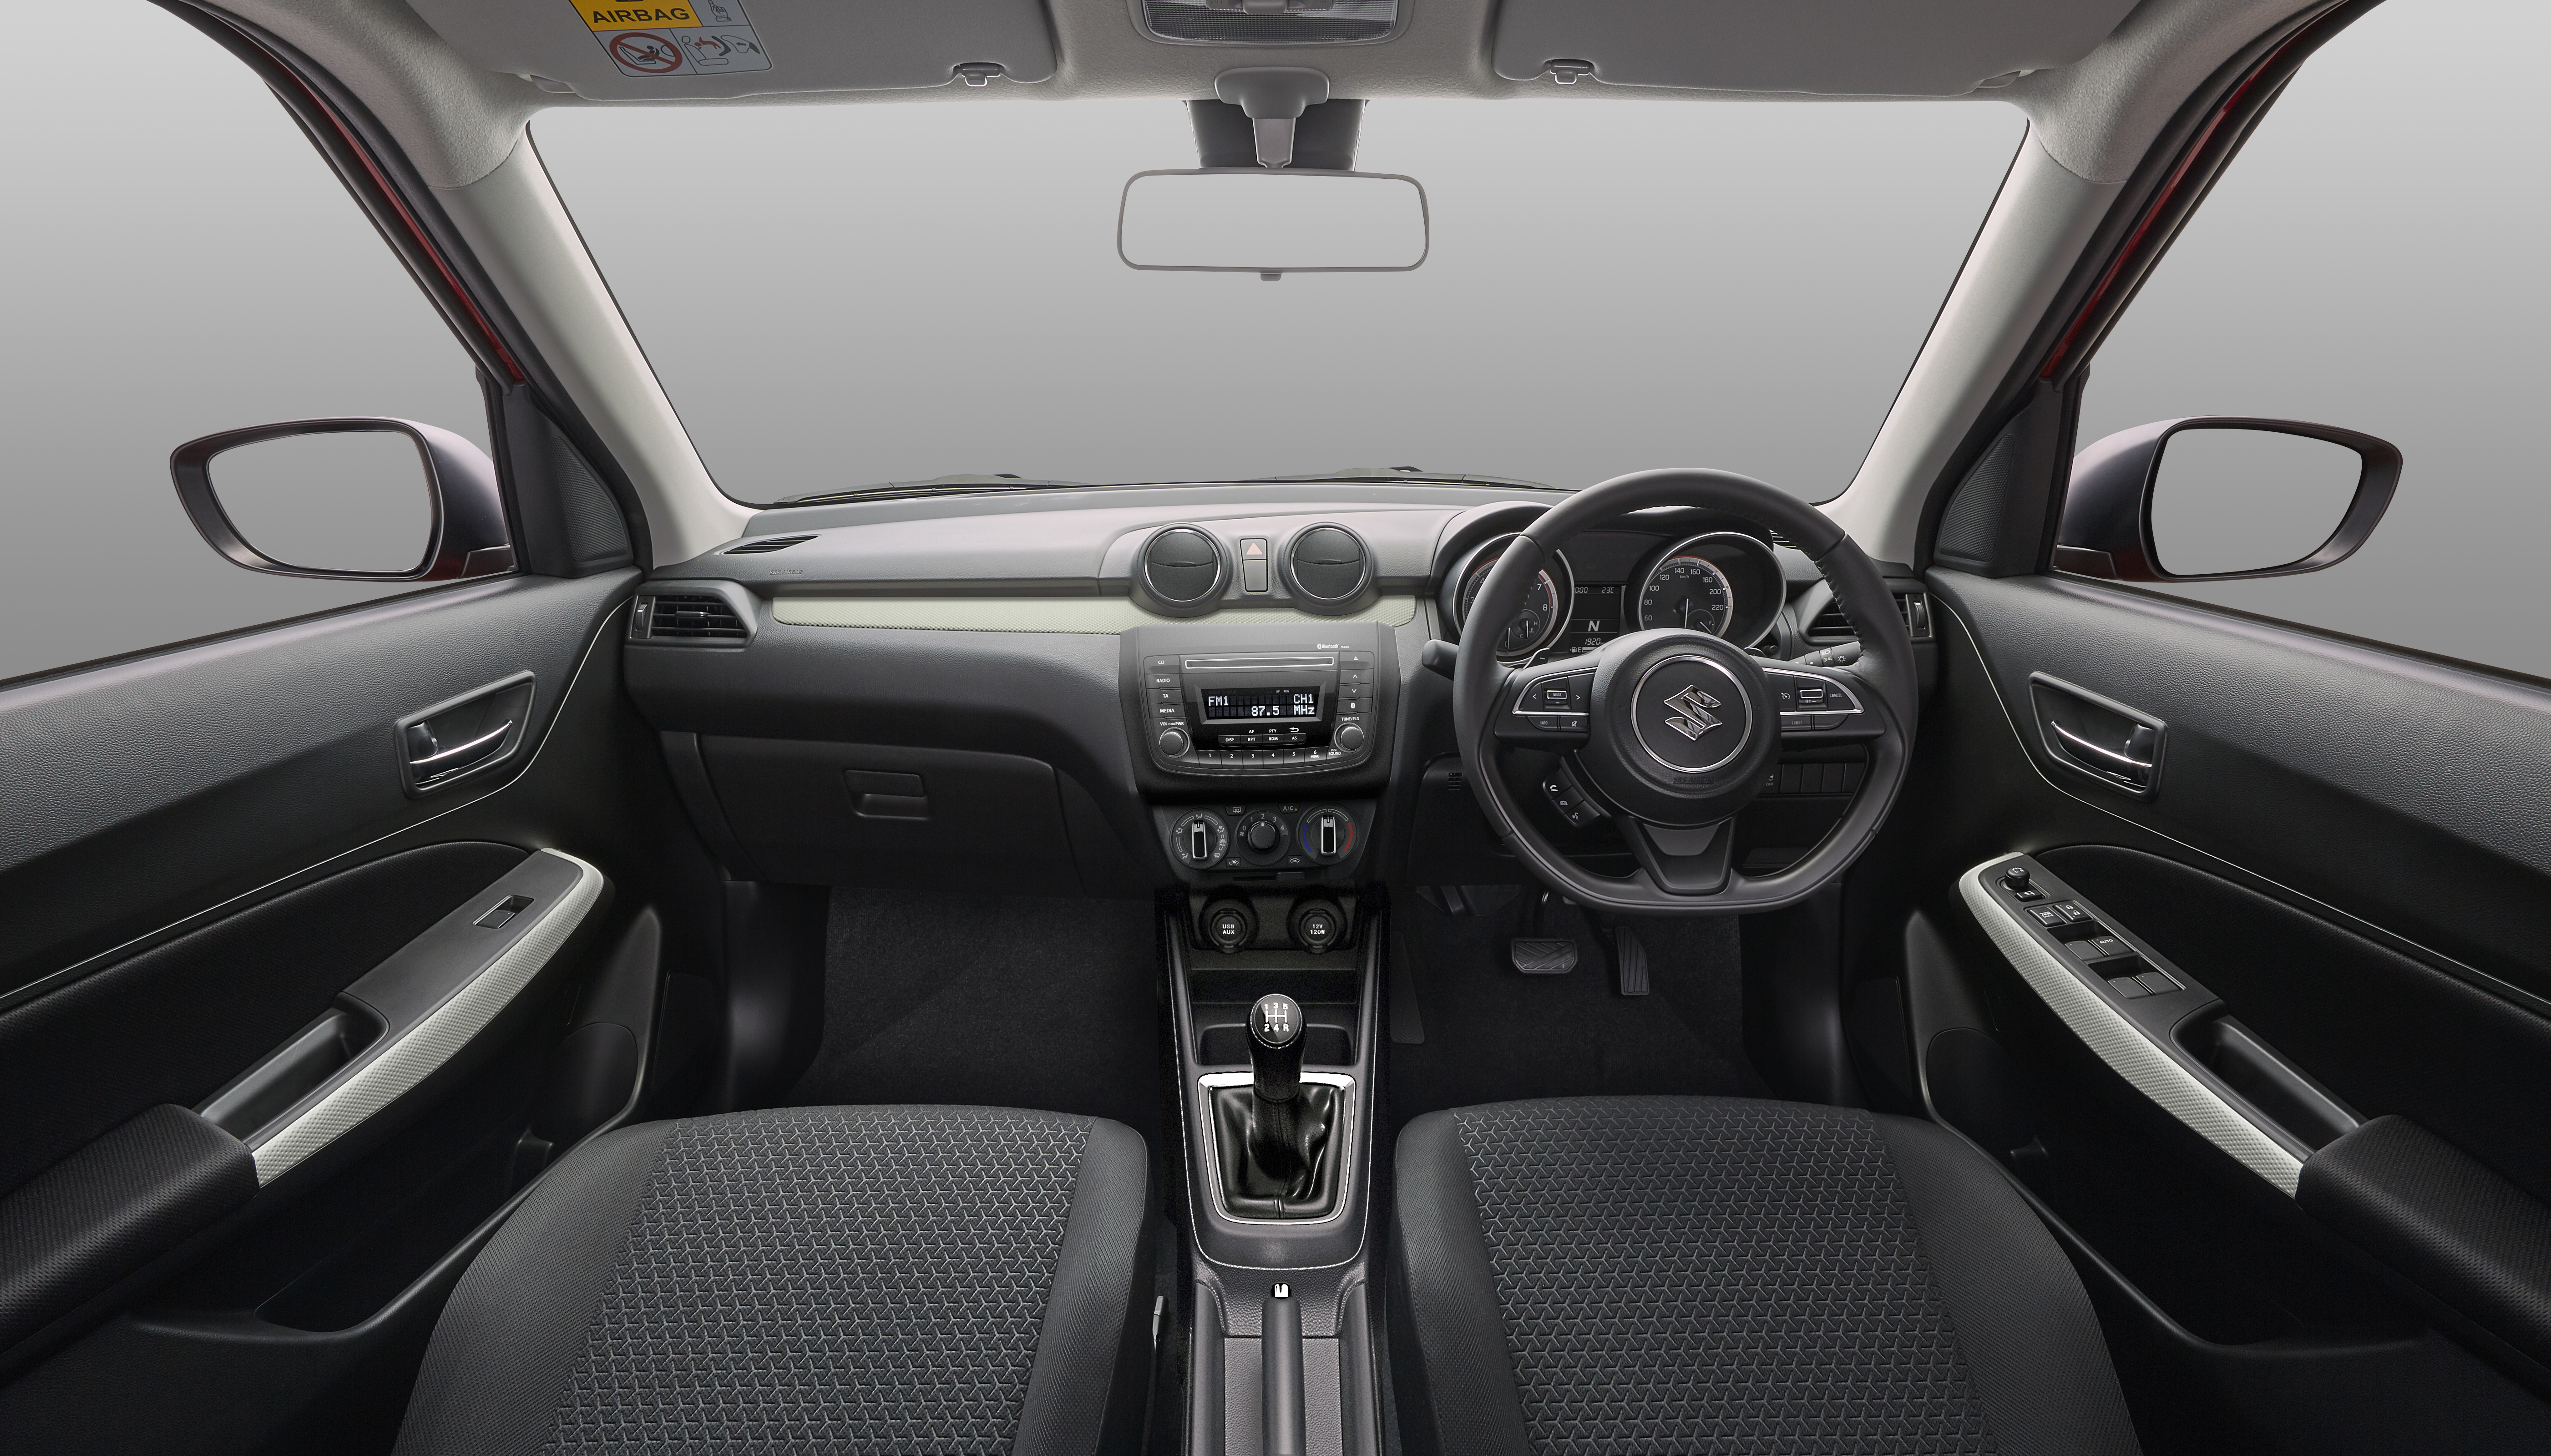 Suzuki Swift 5-door exterior specifications